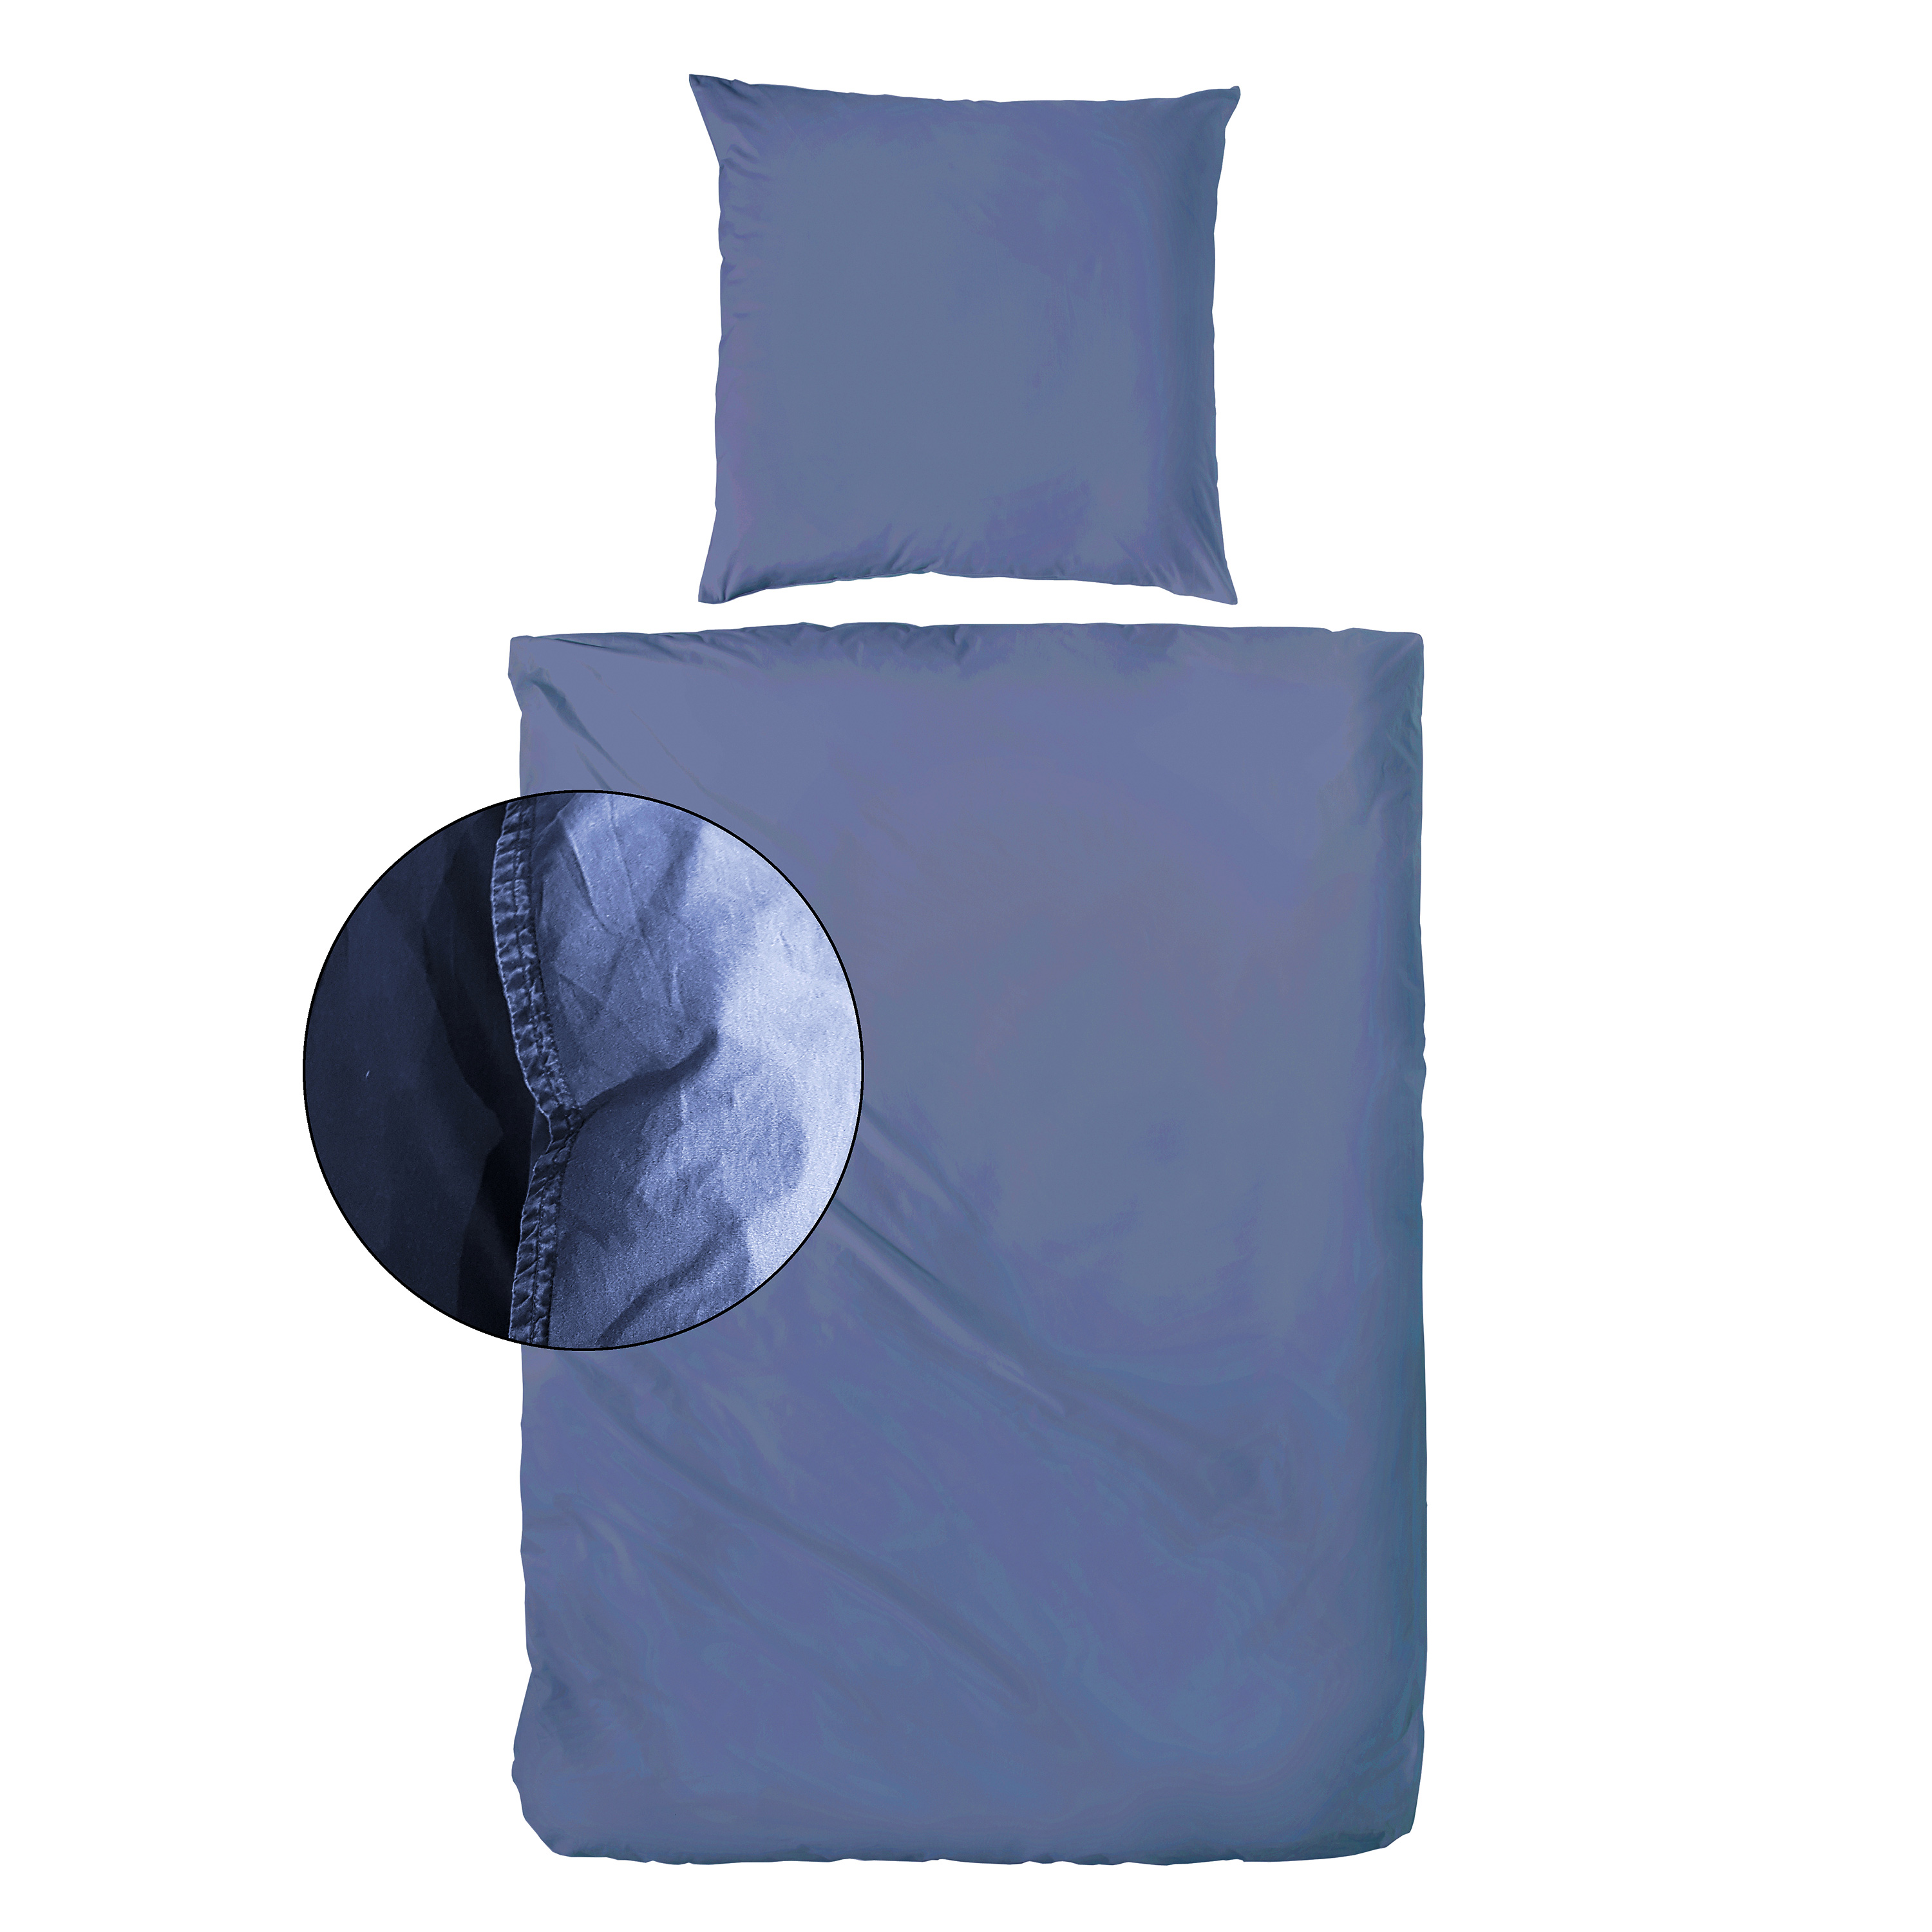 Traumhaft gut schlafen – Stone-Washed-Bettwäsche, 100% Baumwolle, in versch. Farben und Größen